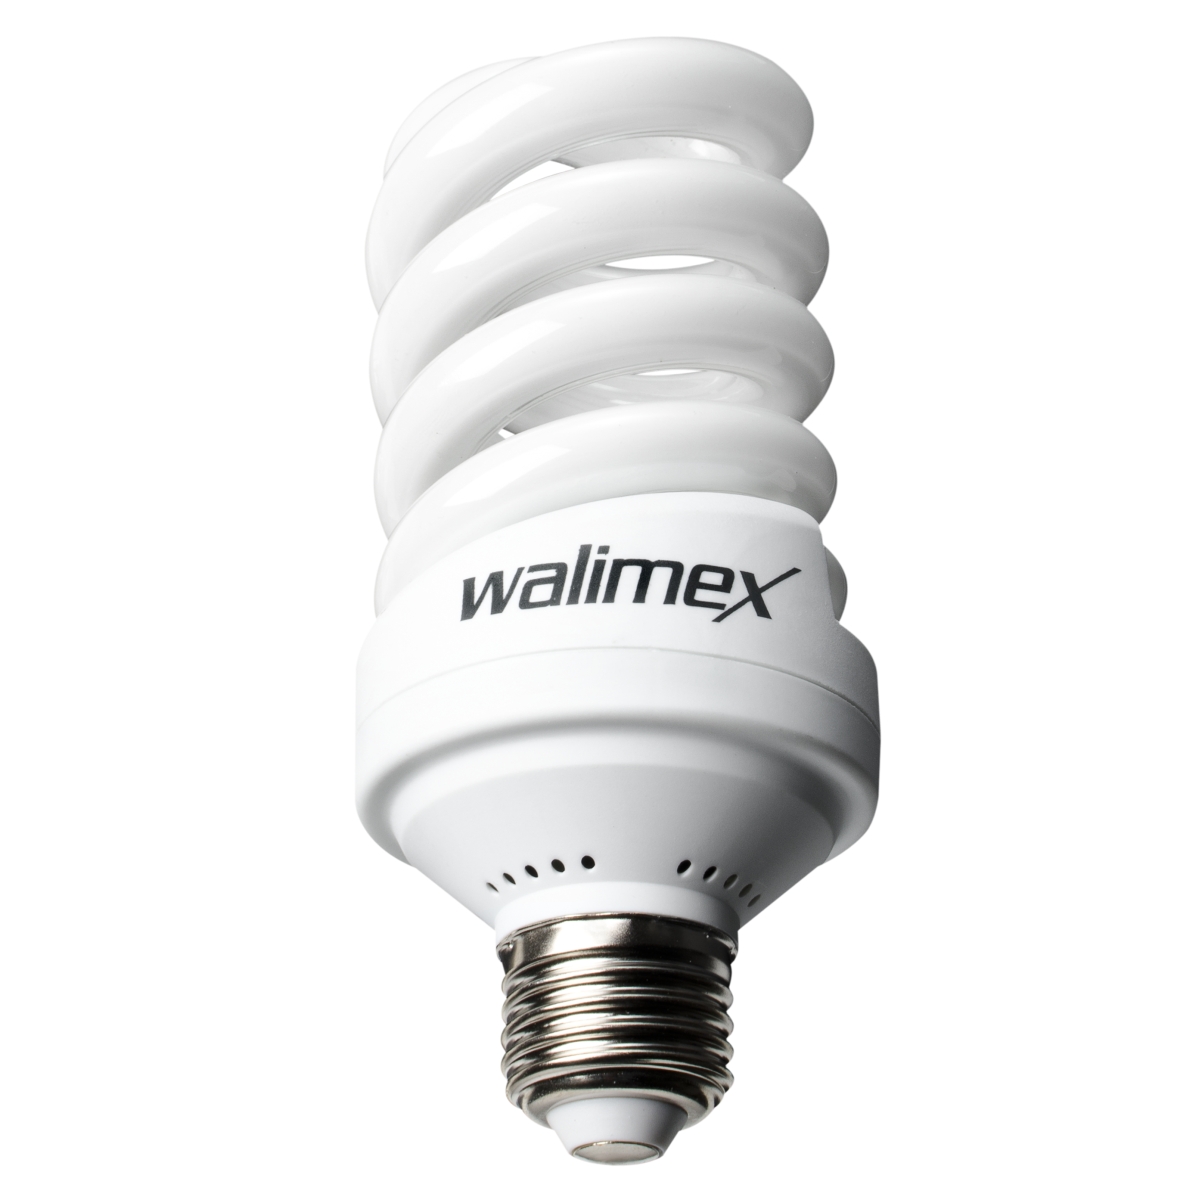 Walimex pro Spiral-Tageslichtlampe 24W